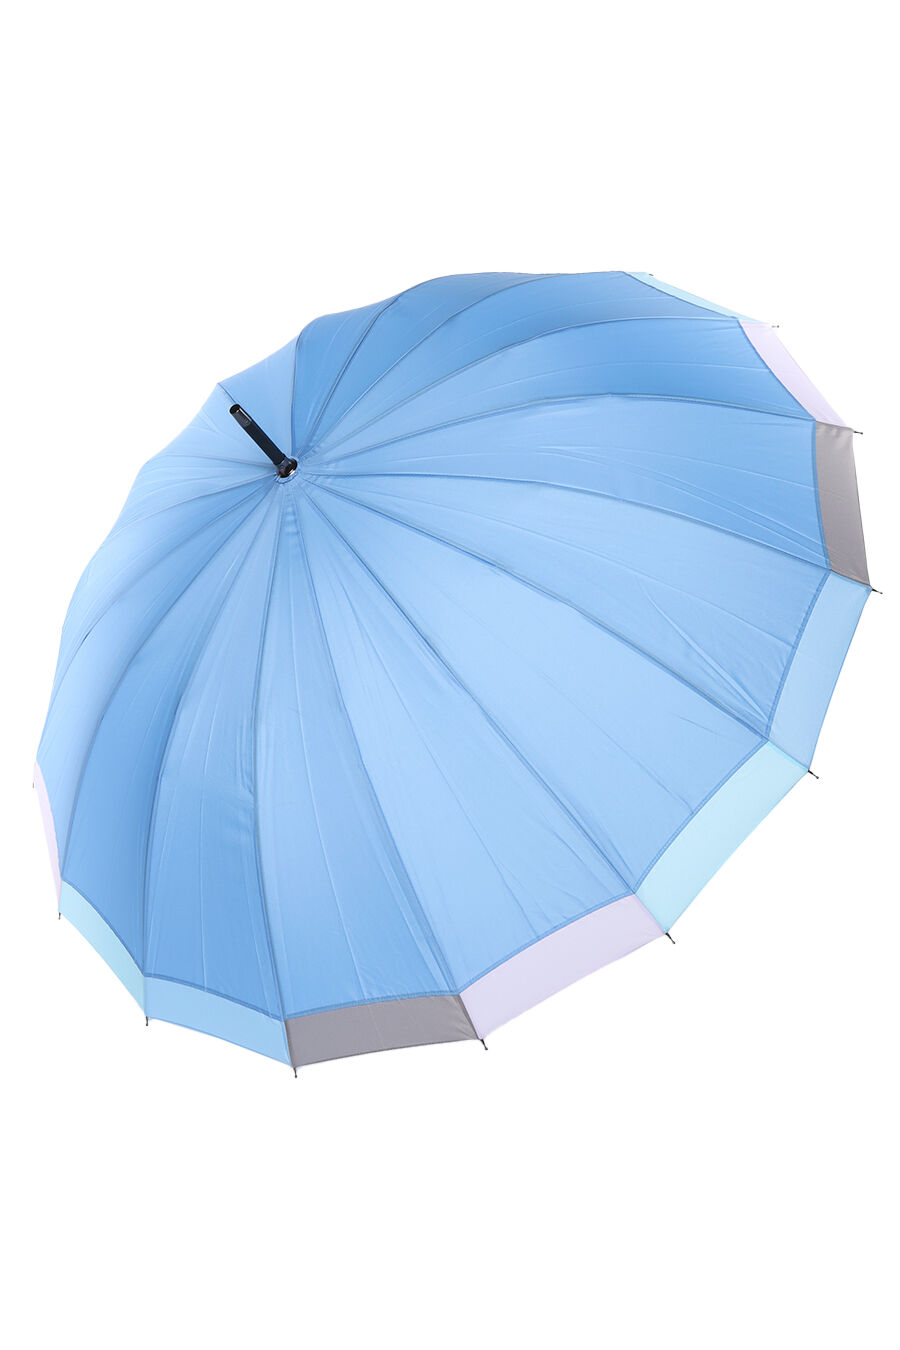 Зонт жен. Umbrella 2161-2 полуавтомат трость (голубой)